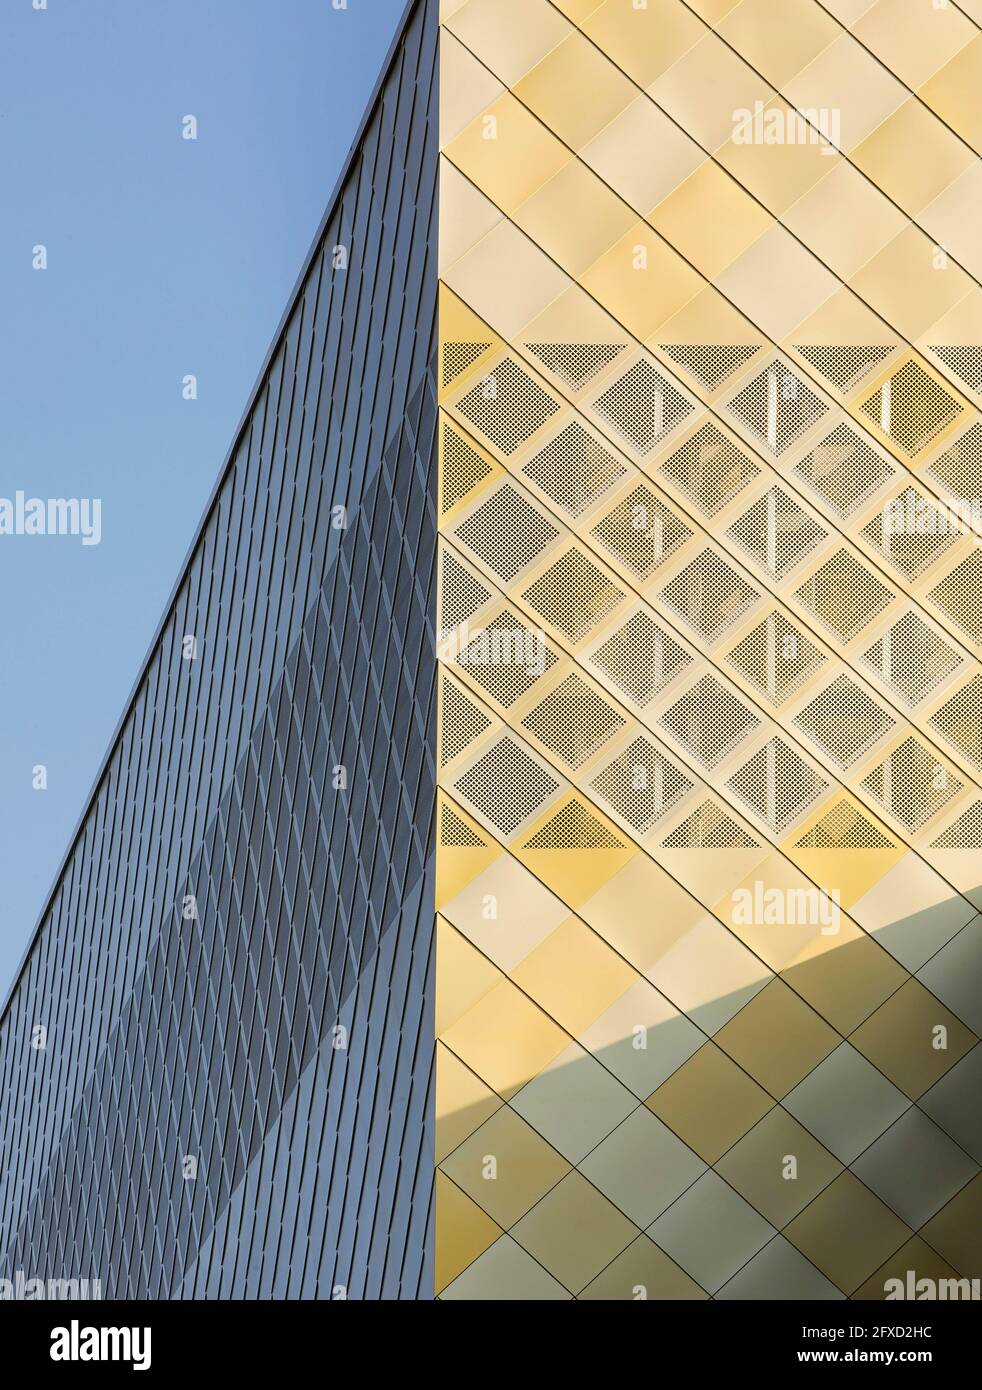 Detail der Fassadenverkleidung. University of Birmingham, Collaborative Teaching Laboratory, Birmingham, Großbritannien. Architekt: Sheppard Robson, 2018. Stockfoto